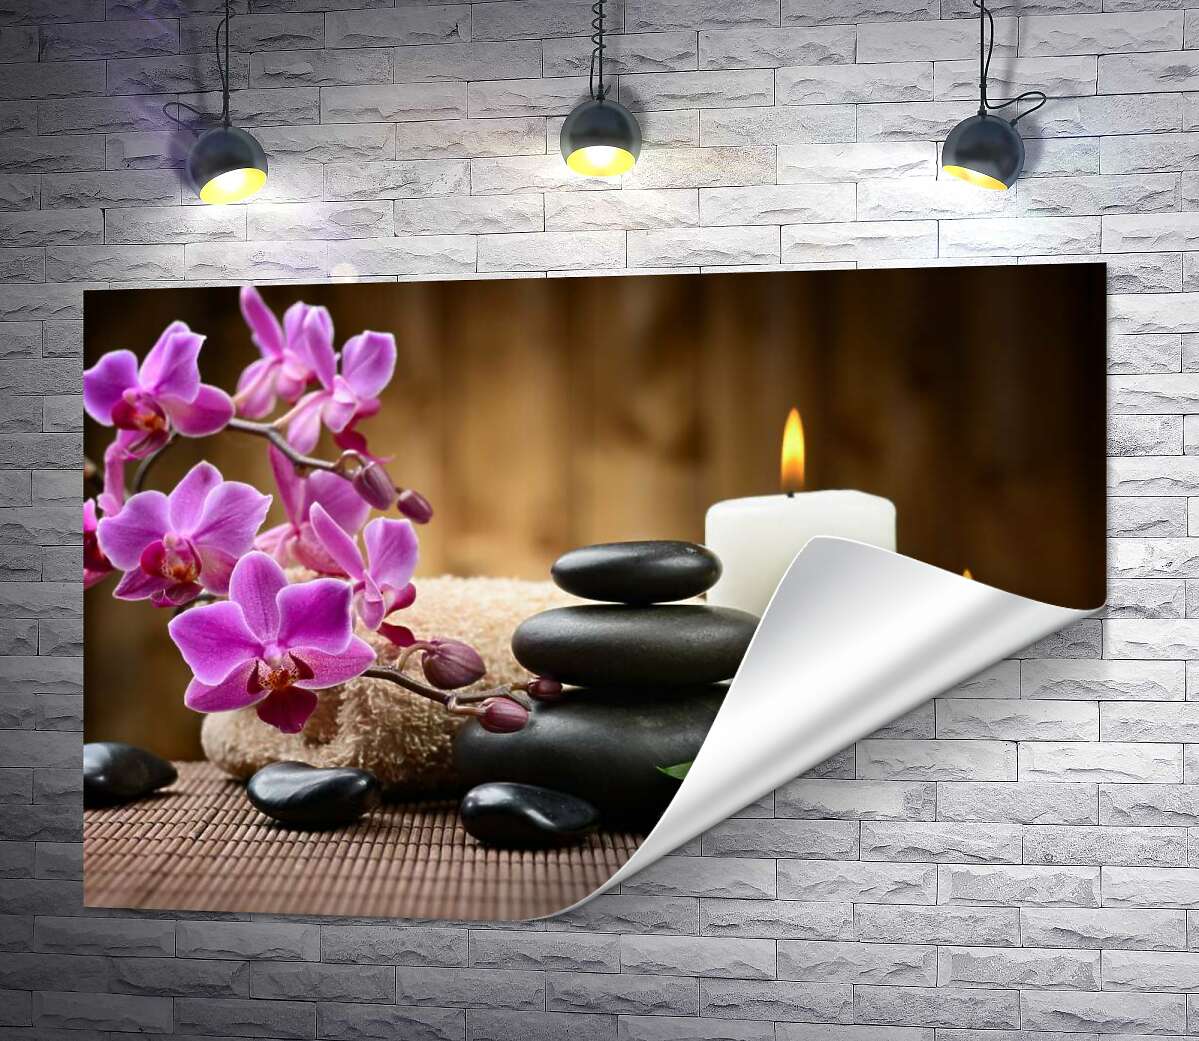 друк Спа-відпочинок в пахощах свічок, орхідей серед бамбуку та каміння